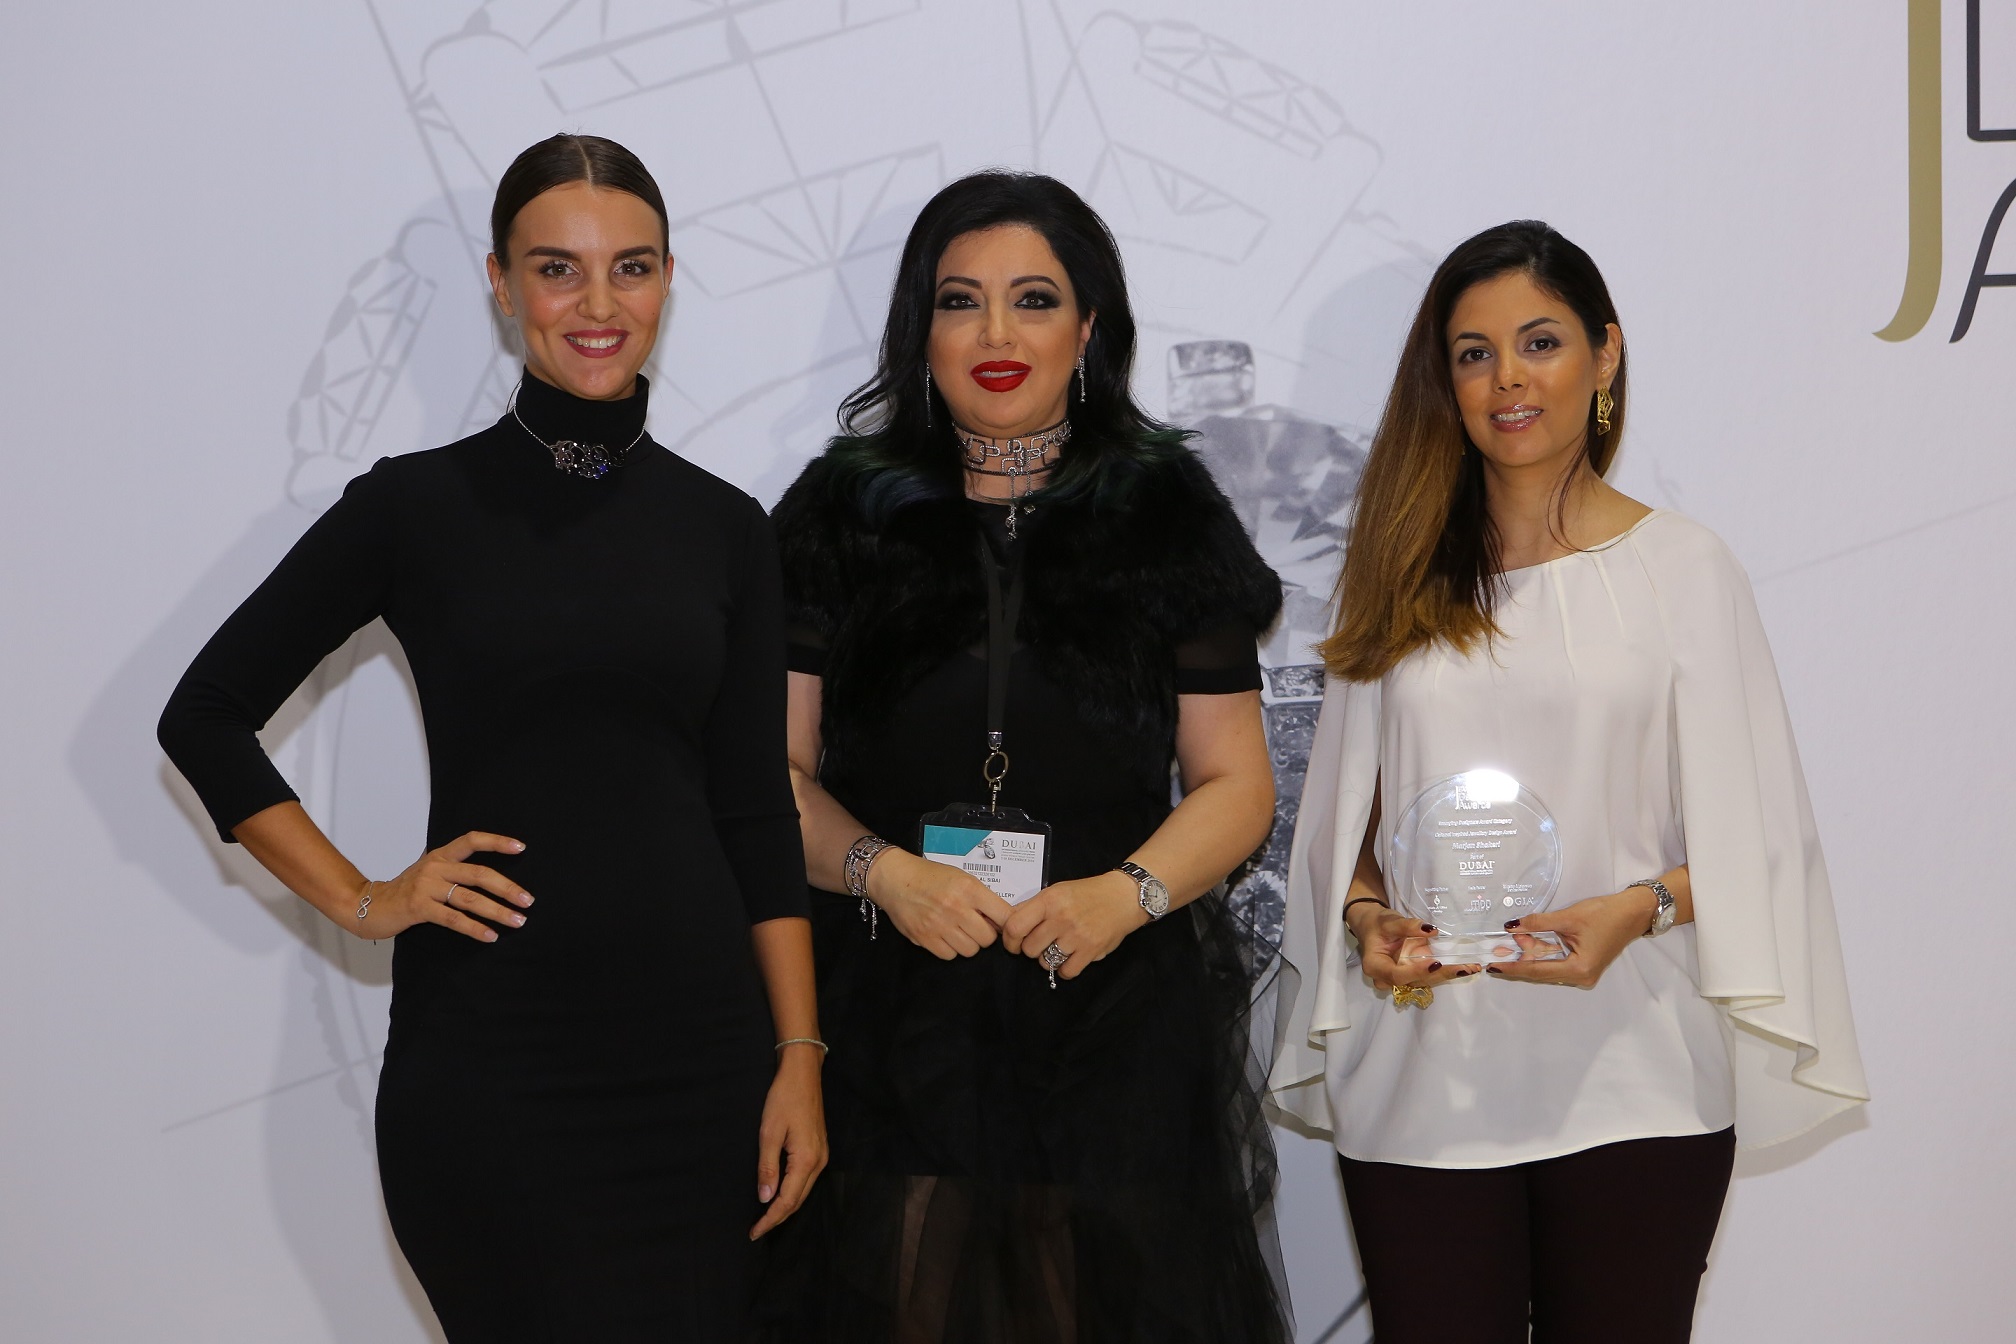 صورة بالصور اسبوع دبي للمجوهرات و المصممة مها السباعي تكرم الفائزين